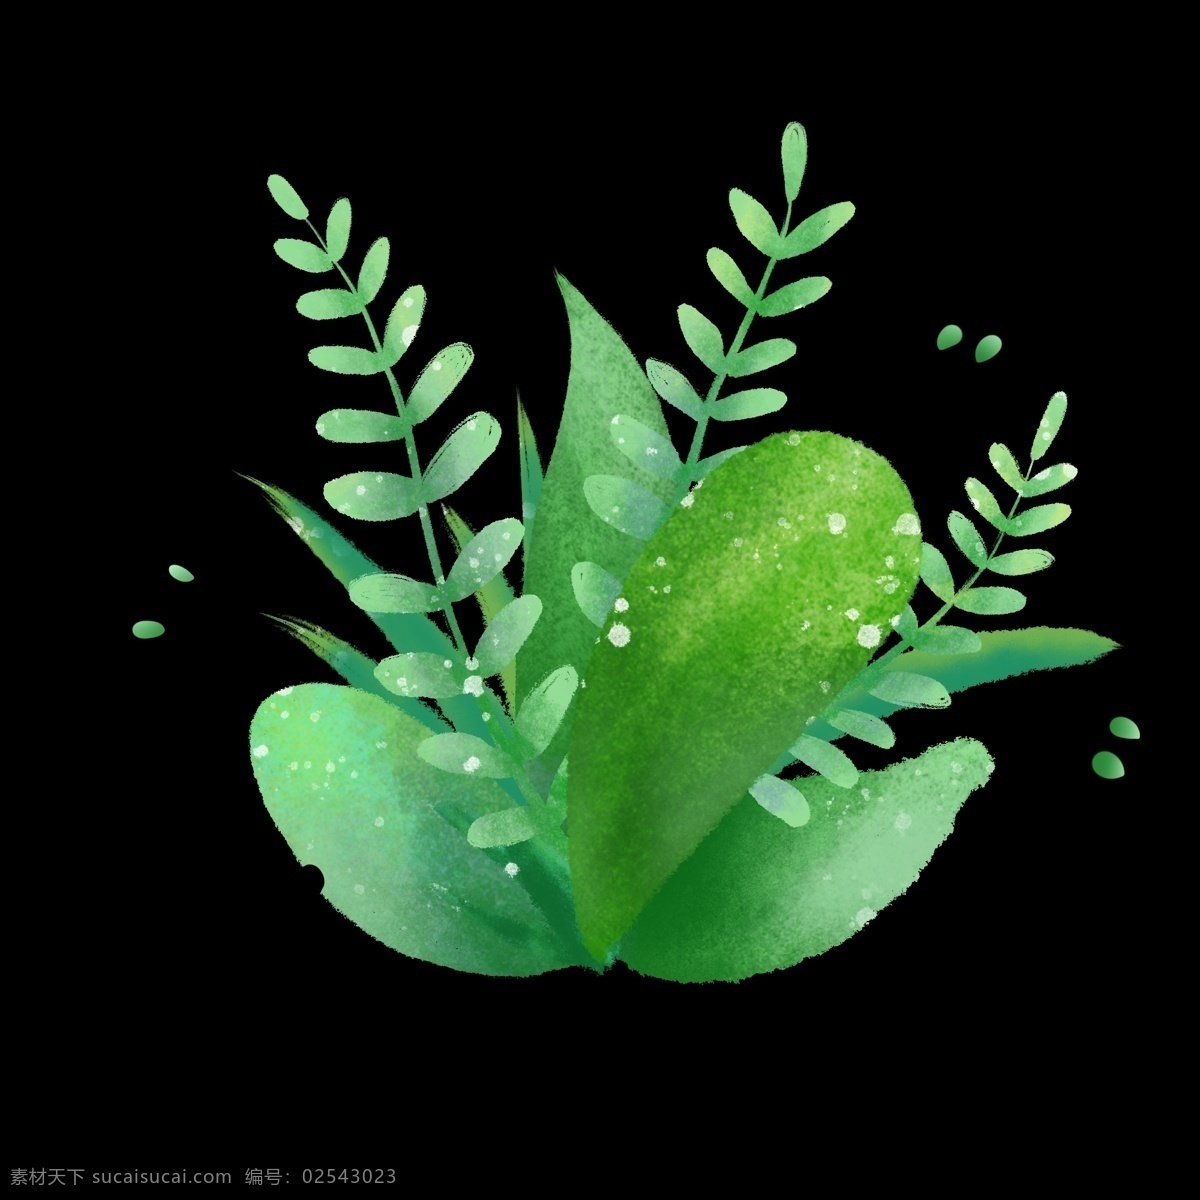 夏季 清新 绿色植物 水彩 植物 免 抠 图 水彩绿色植物 夏季树叶 绿色手绘插画 淡彩手绘 季节海报装饰